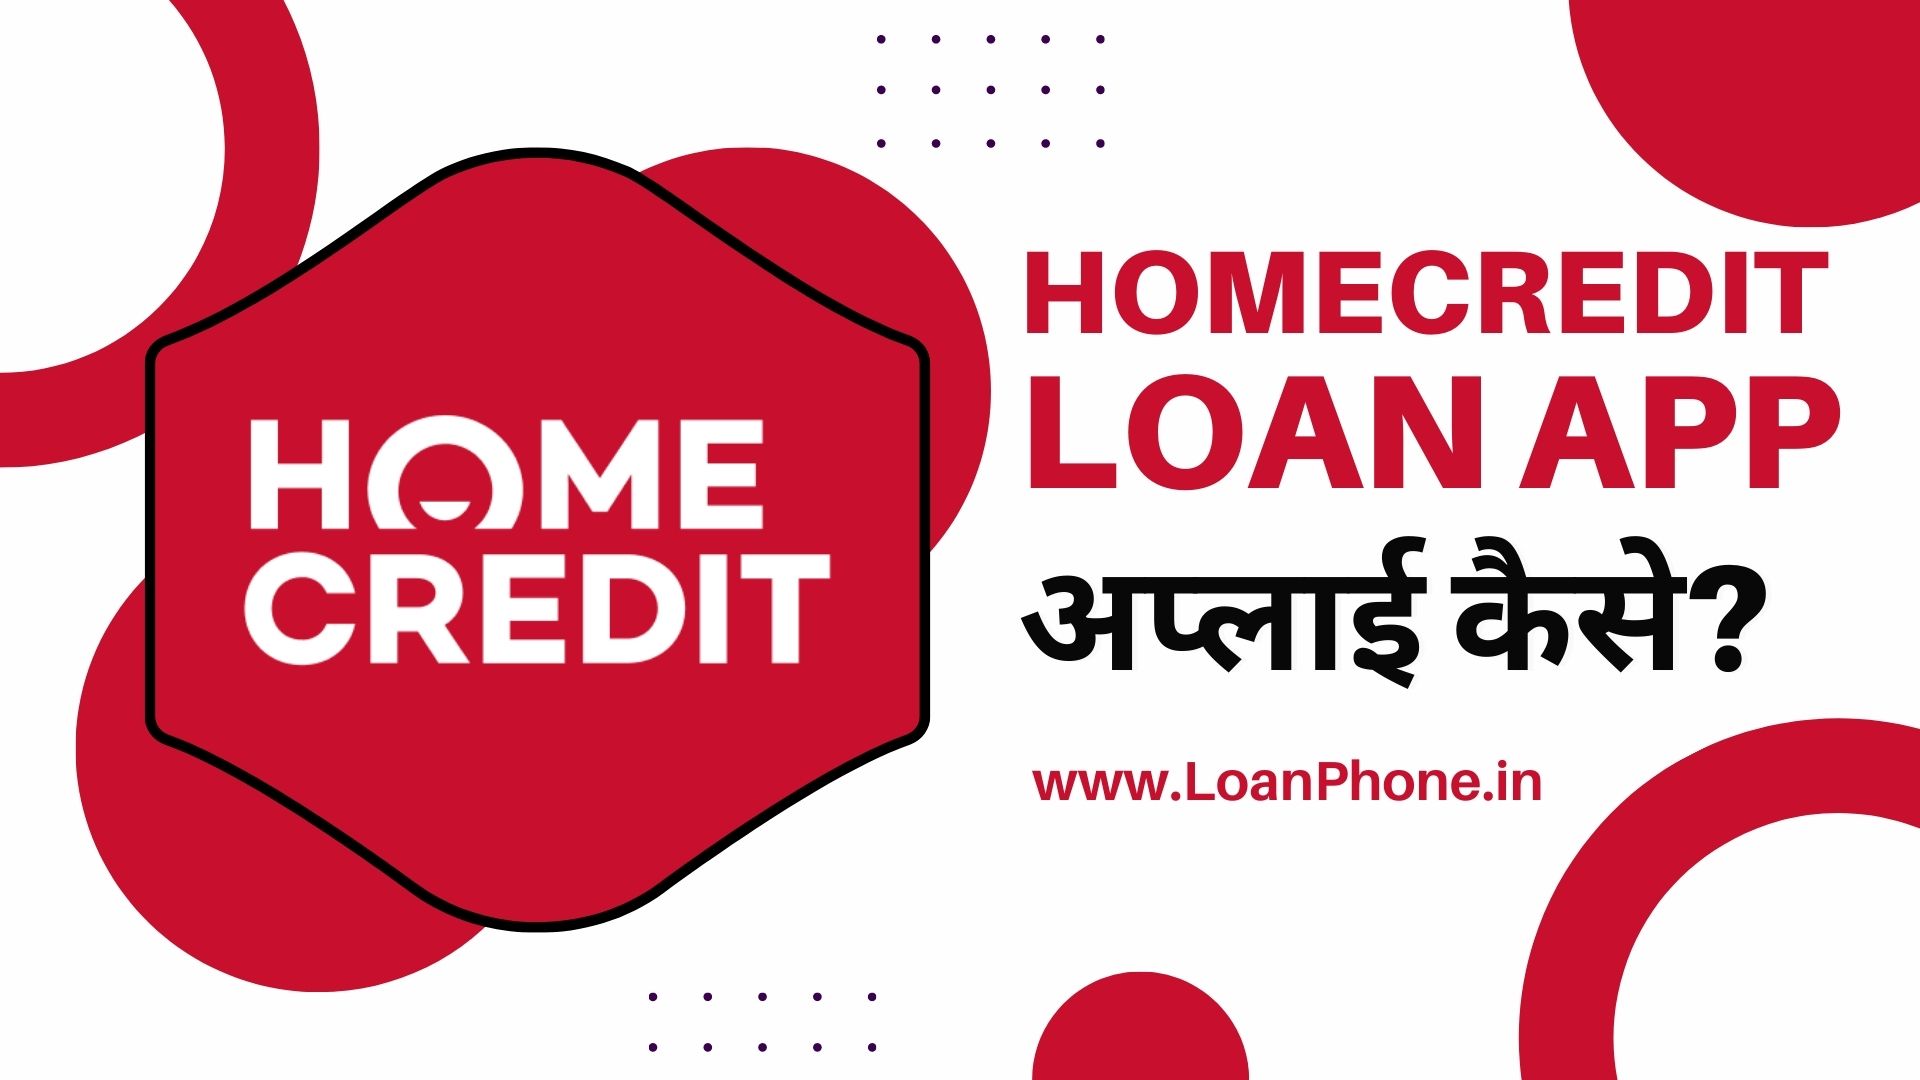 Home Credit Loan App से लोन कैसे लें?